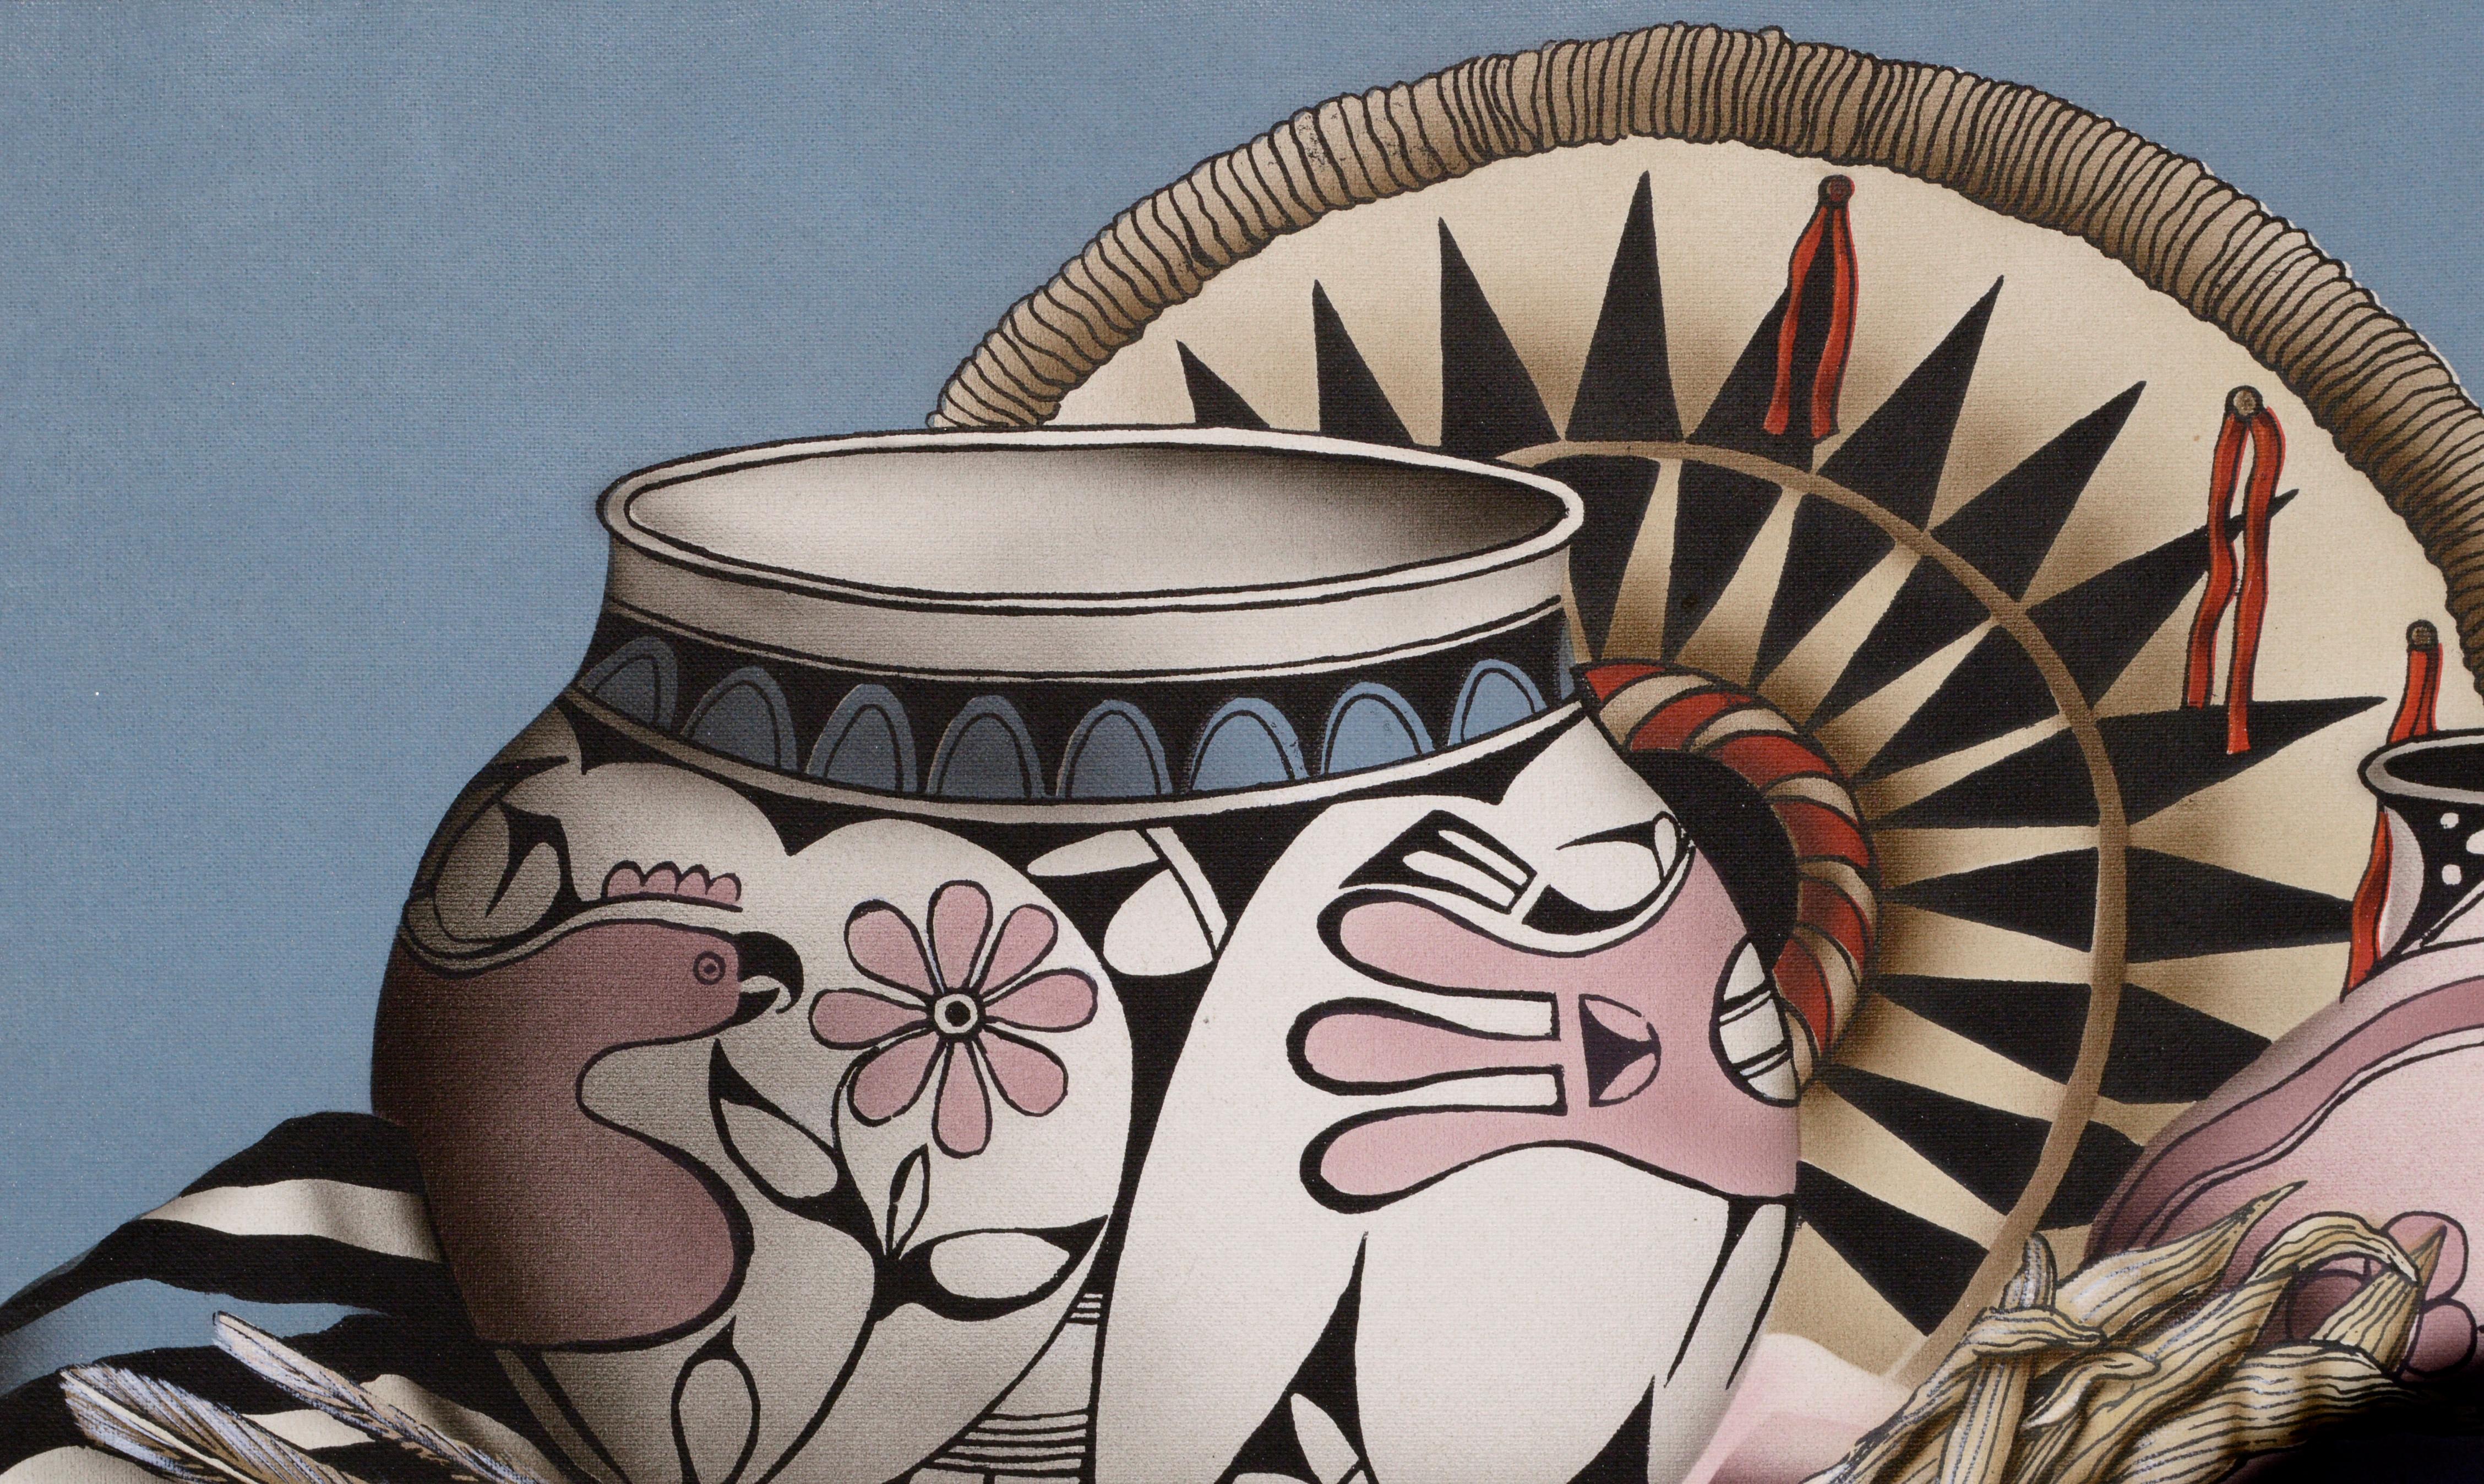 zuni pottery designs